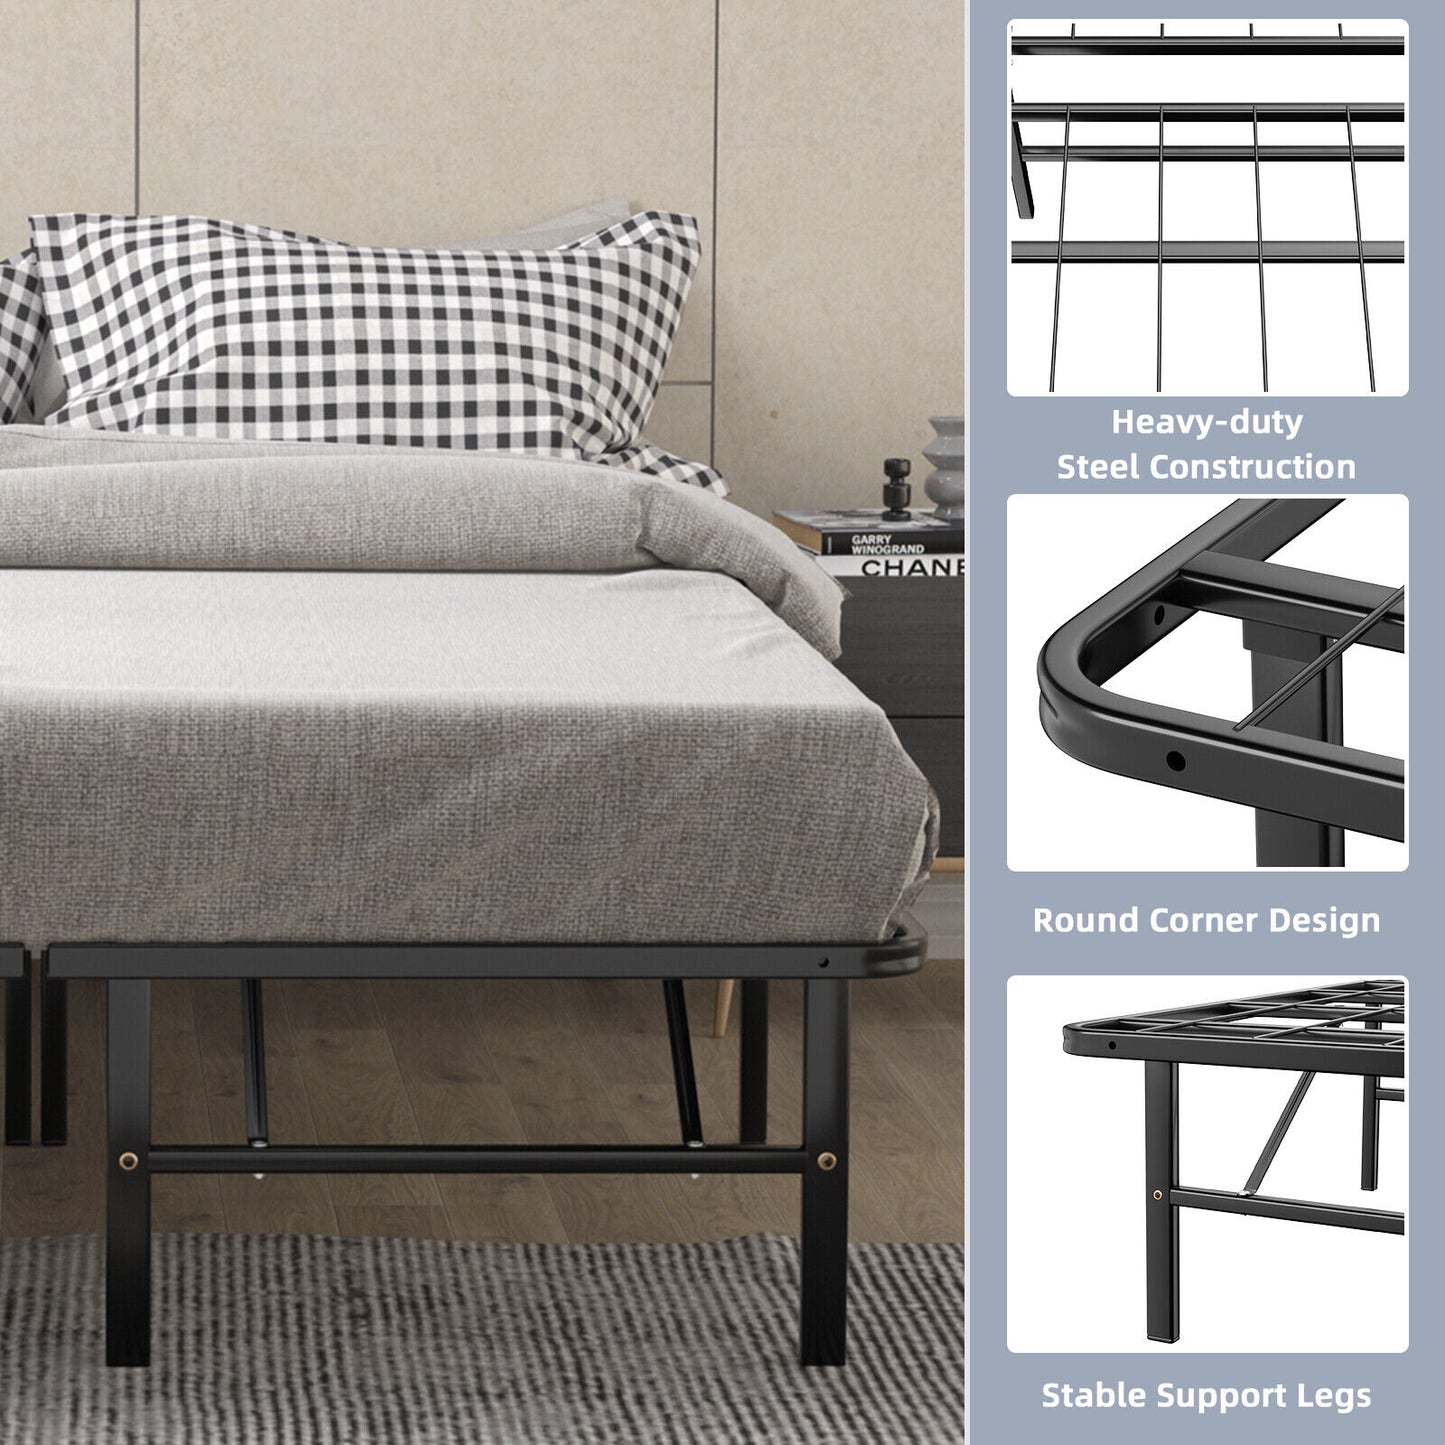 Bed Frame Full Size - Foldable Platform Bed